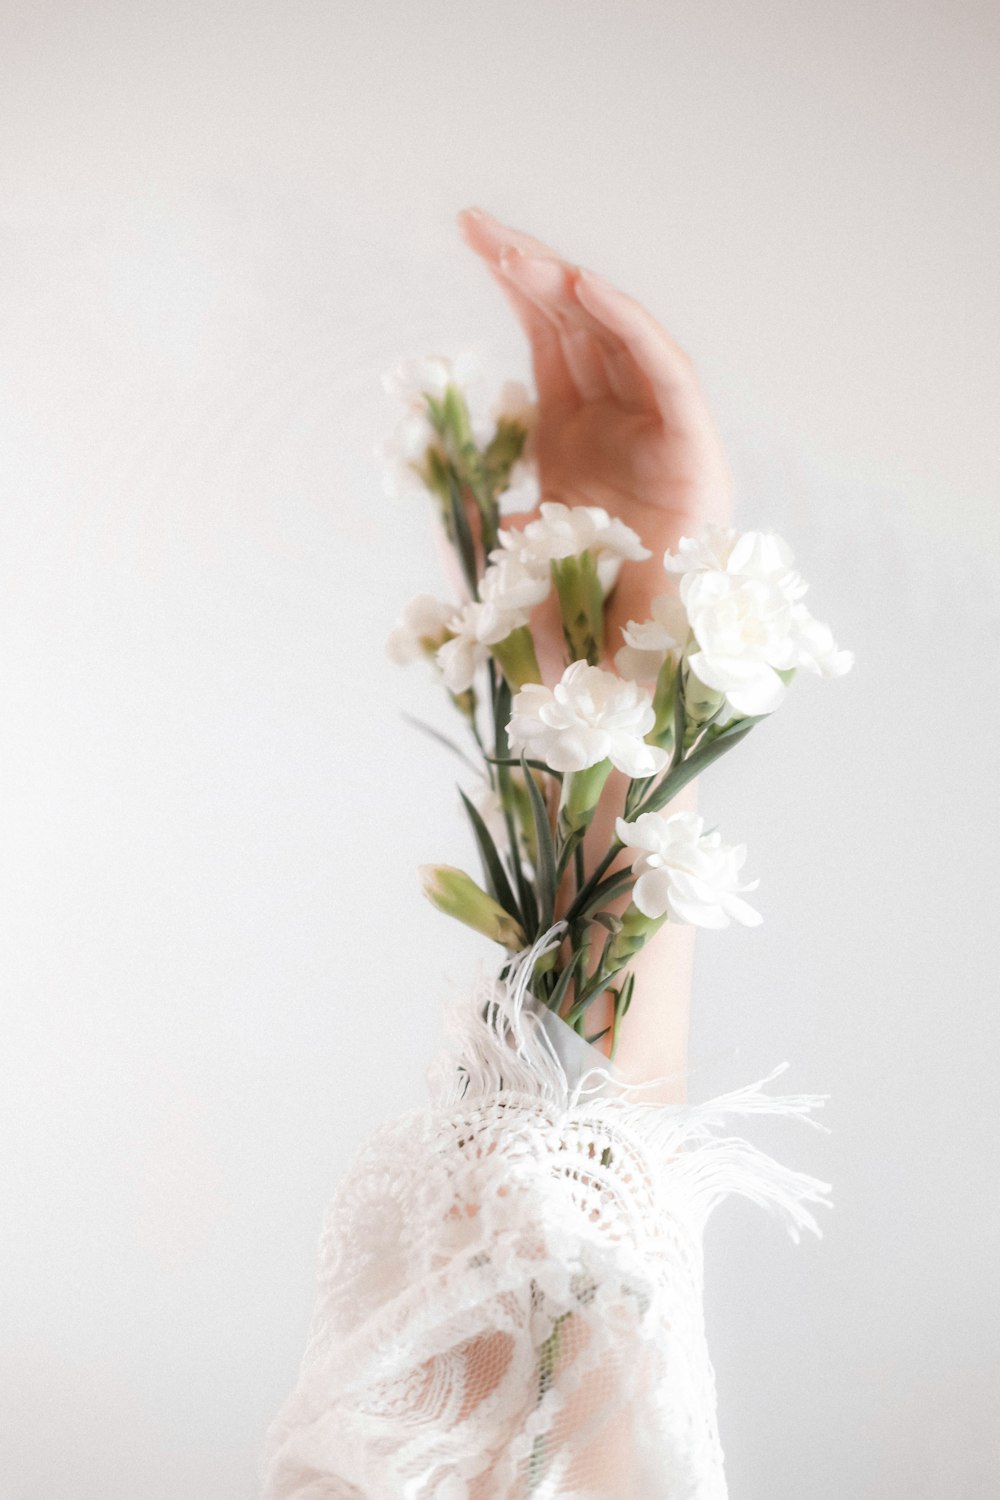 白い陶器の花瓶に白い花